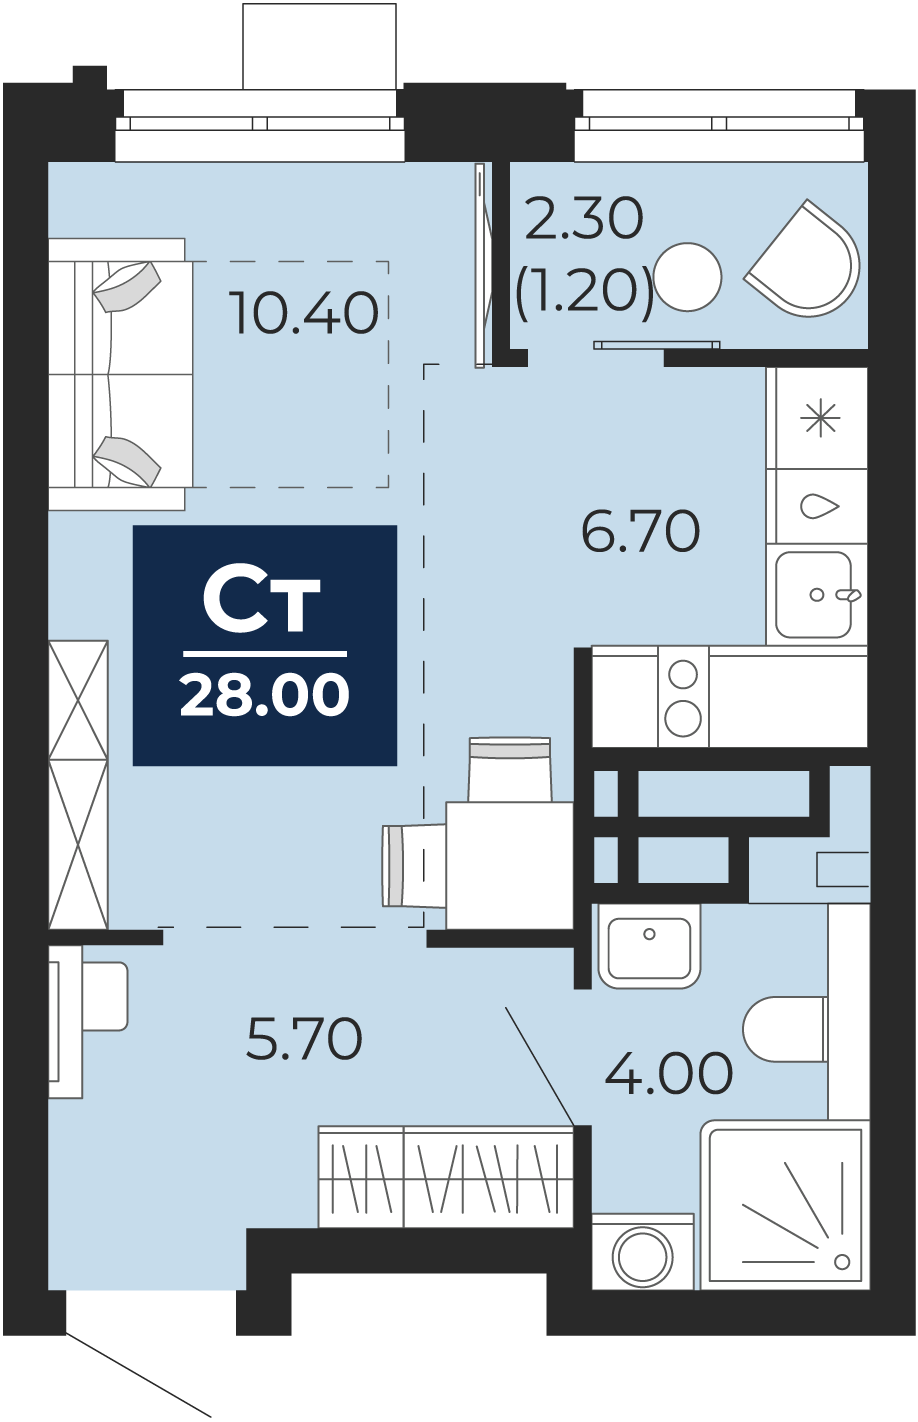 Квартира № 156, Студия, 28 кв. м, 10 этаж